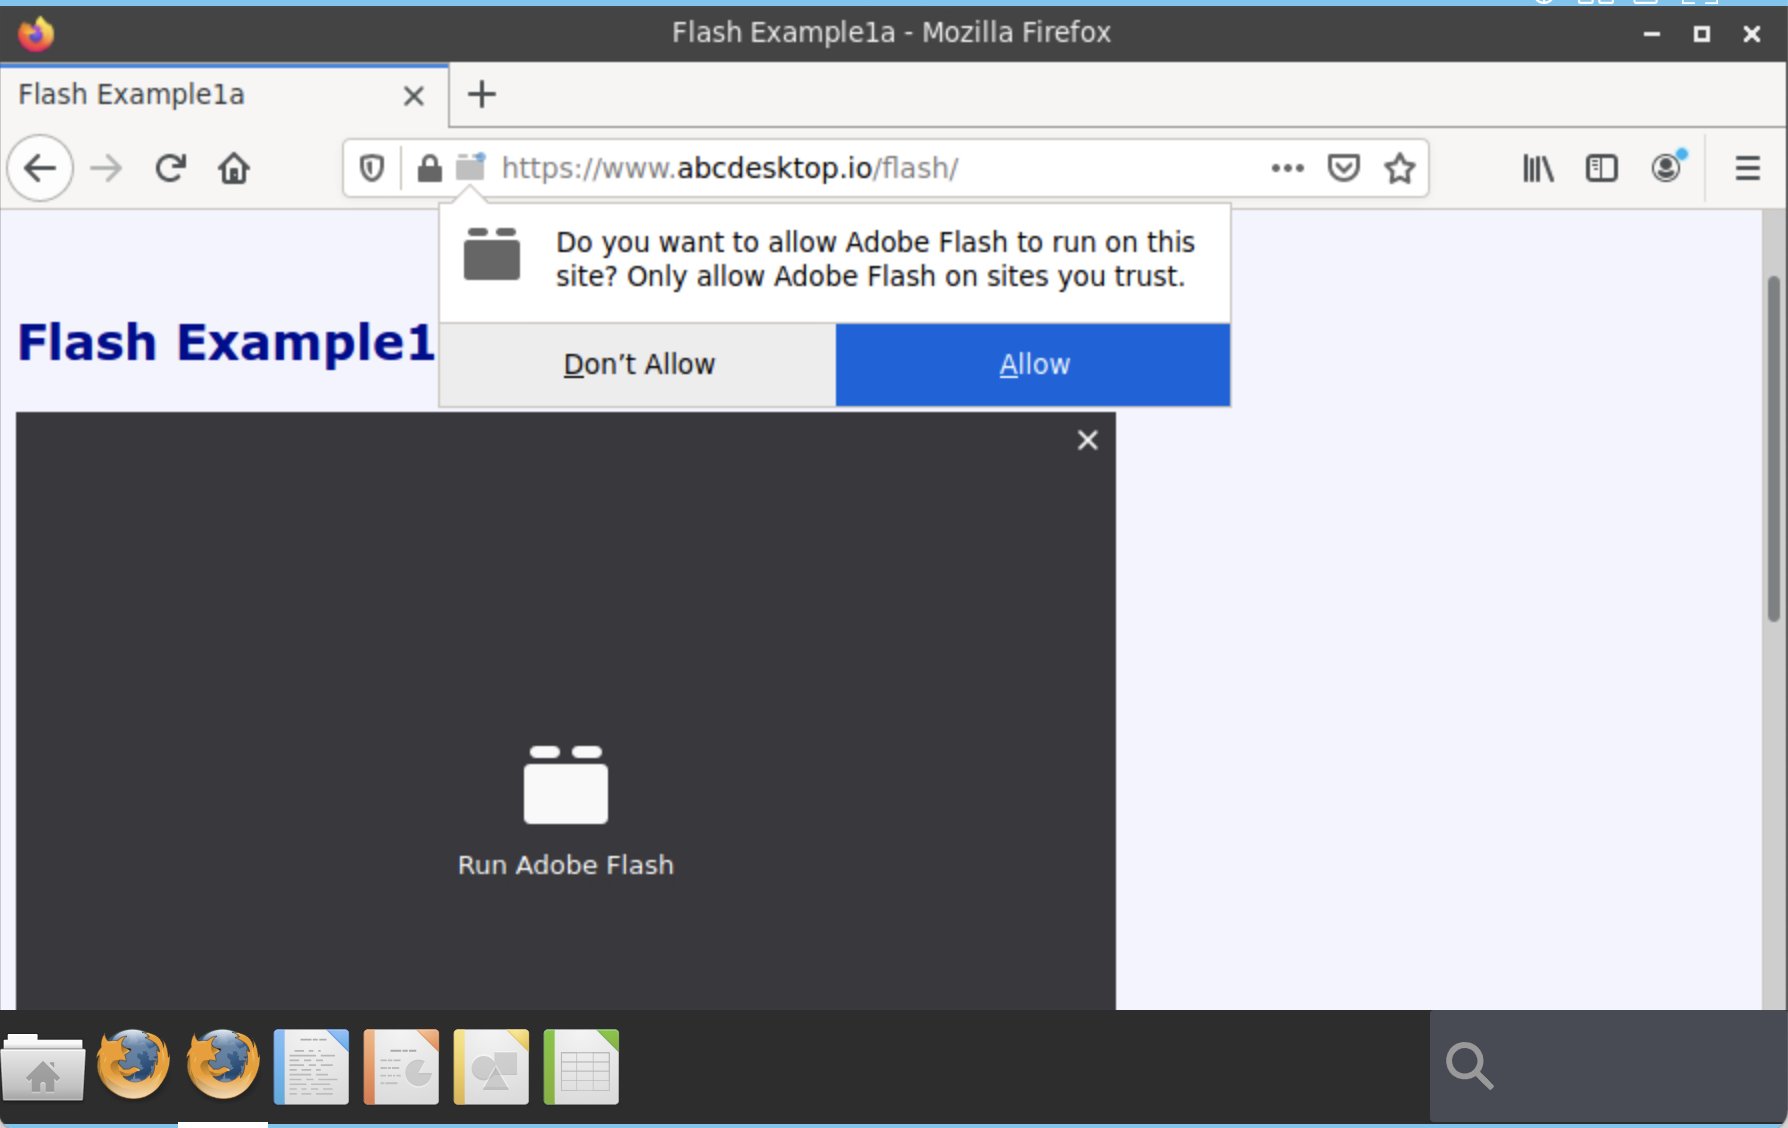 Allow Adobe Flash to run